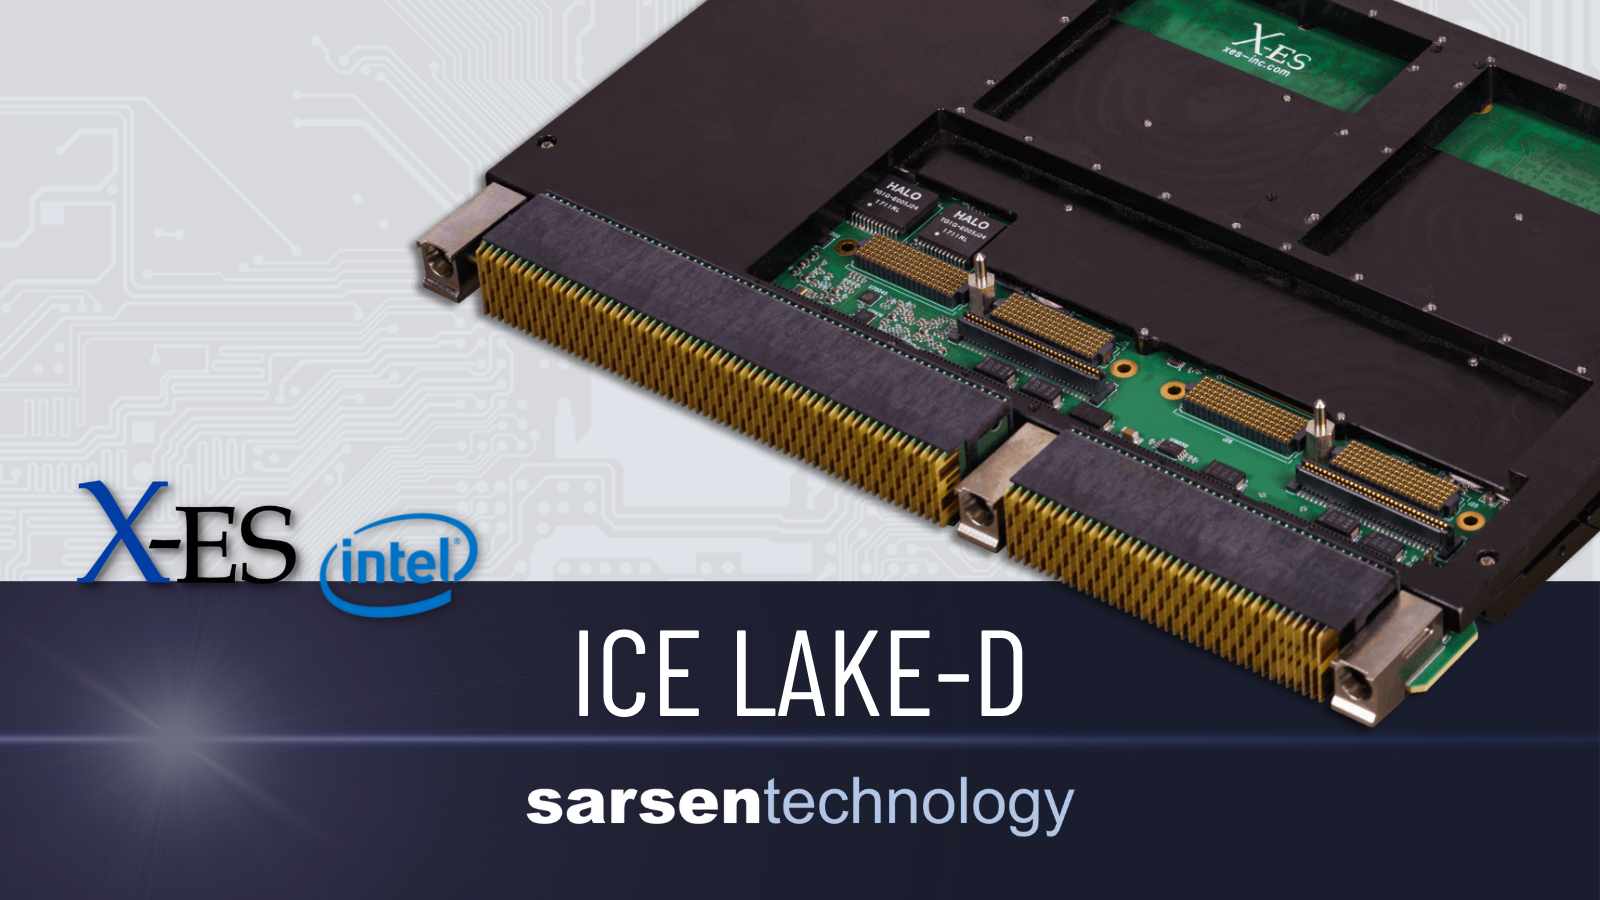 Intel Xeon Ice Lake-D Single Board Computers